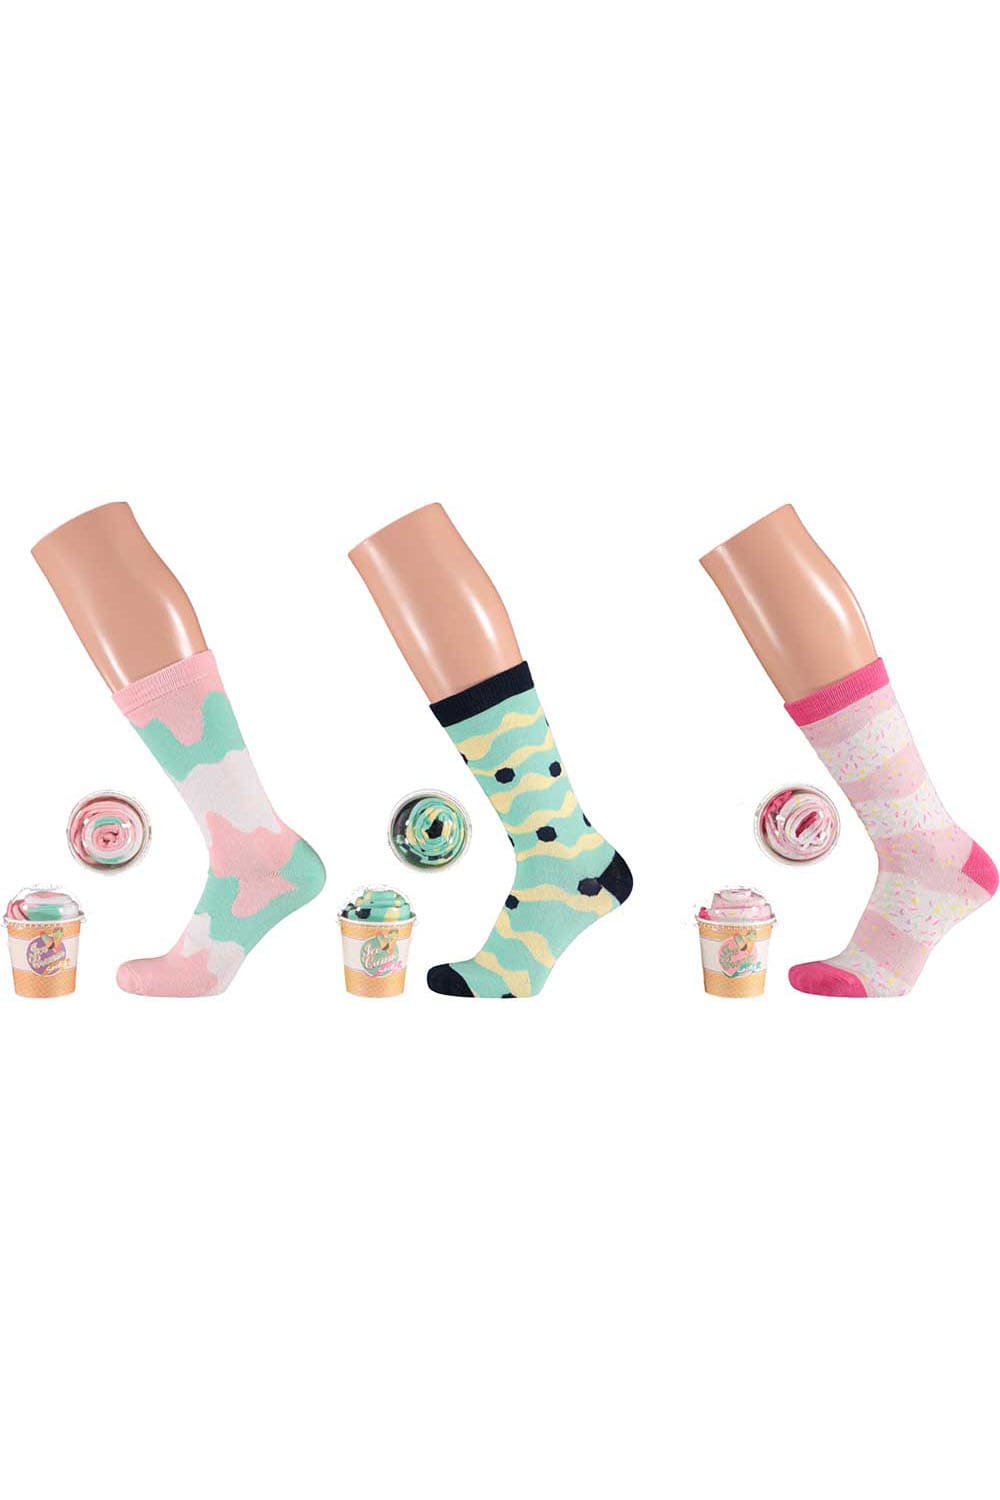 Ultimative Socken mit entsprechendem Glace Design, verpackt als Soft Ice.  Diese witzigen Ice Cream Socken sind einfach ein grossartiges Geschenk fuer alle, die Spass lieben. Diese Socken sind ein originelles Geschenk, dass nicht jeder hat. 